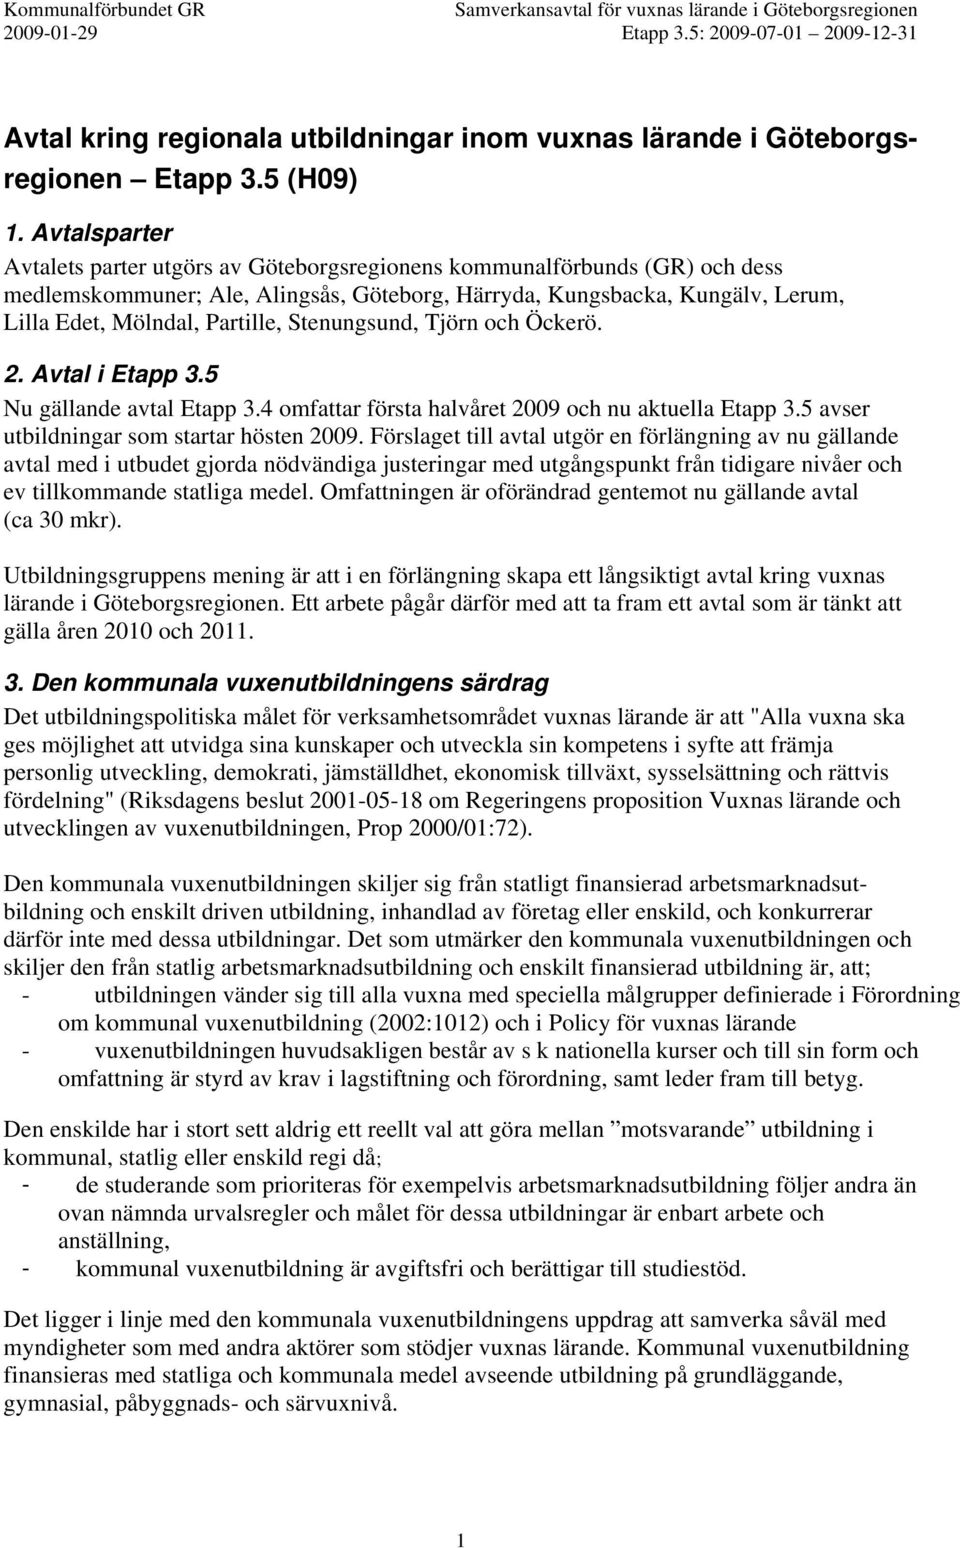 Stenungsund, Tjörn och Öckerö. 2. Avtal i Etapp 3.5 Nu gällande avtal Etapp 3.4 omfattar första halvåret 2009 och nu aktuella Etapp 3.5 avser utbildningar som startar hösten 2009.